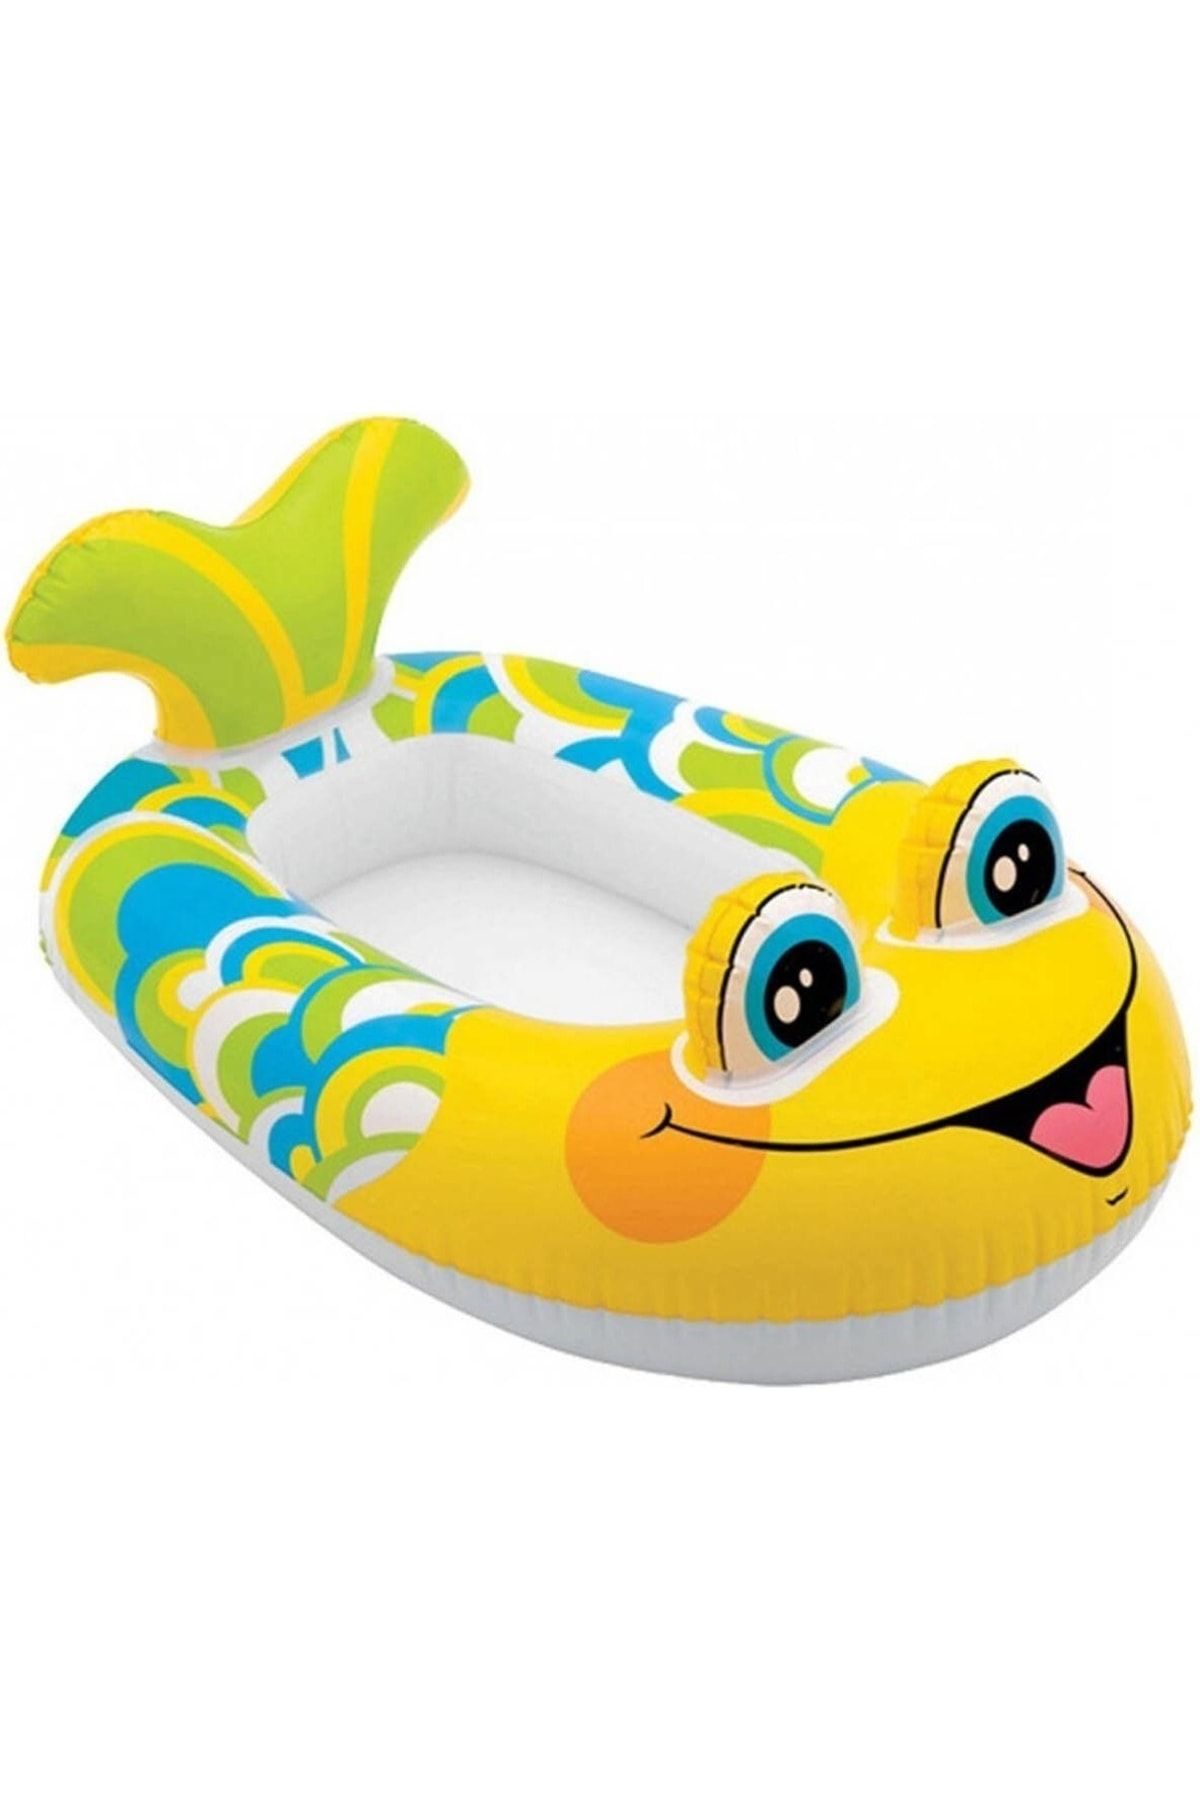 Vardem Intex Kids Pool Cruiser / Balık Şeklinde Şişme Çocuk Botu 107 Cm / 59380